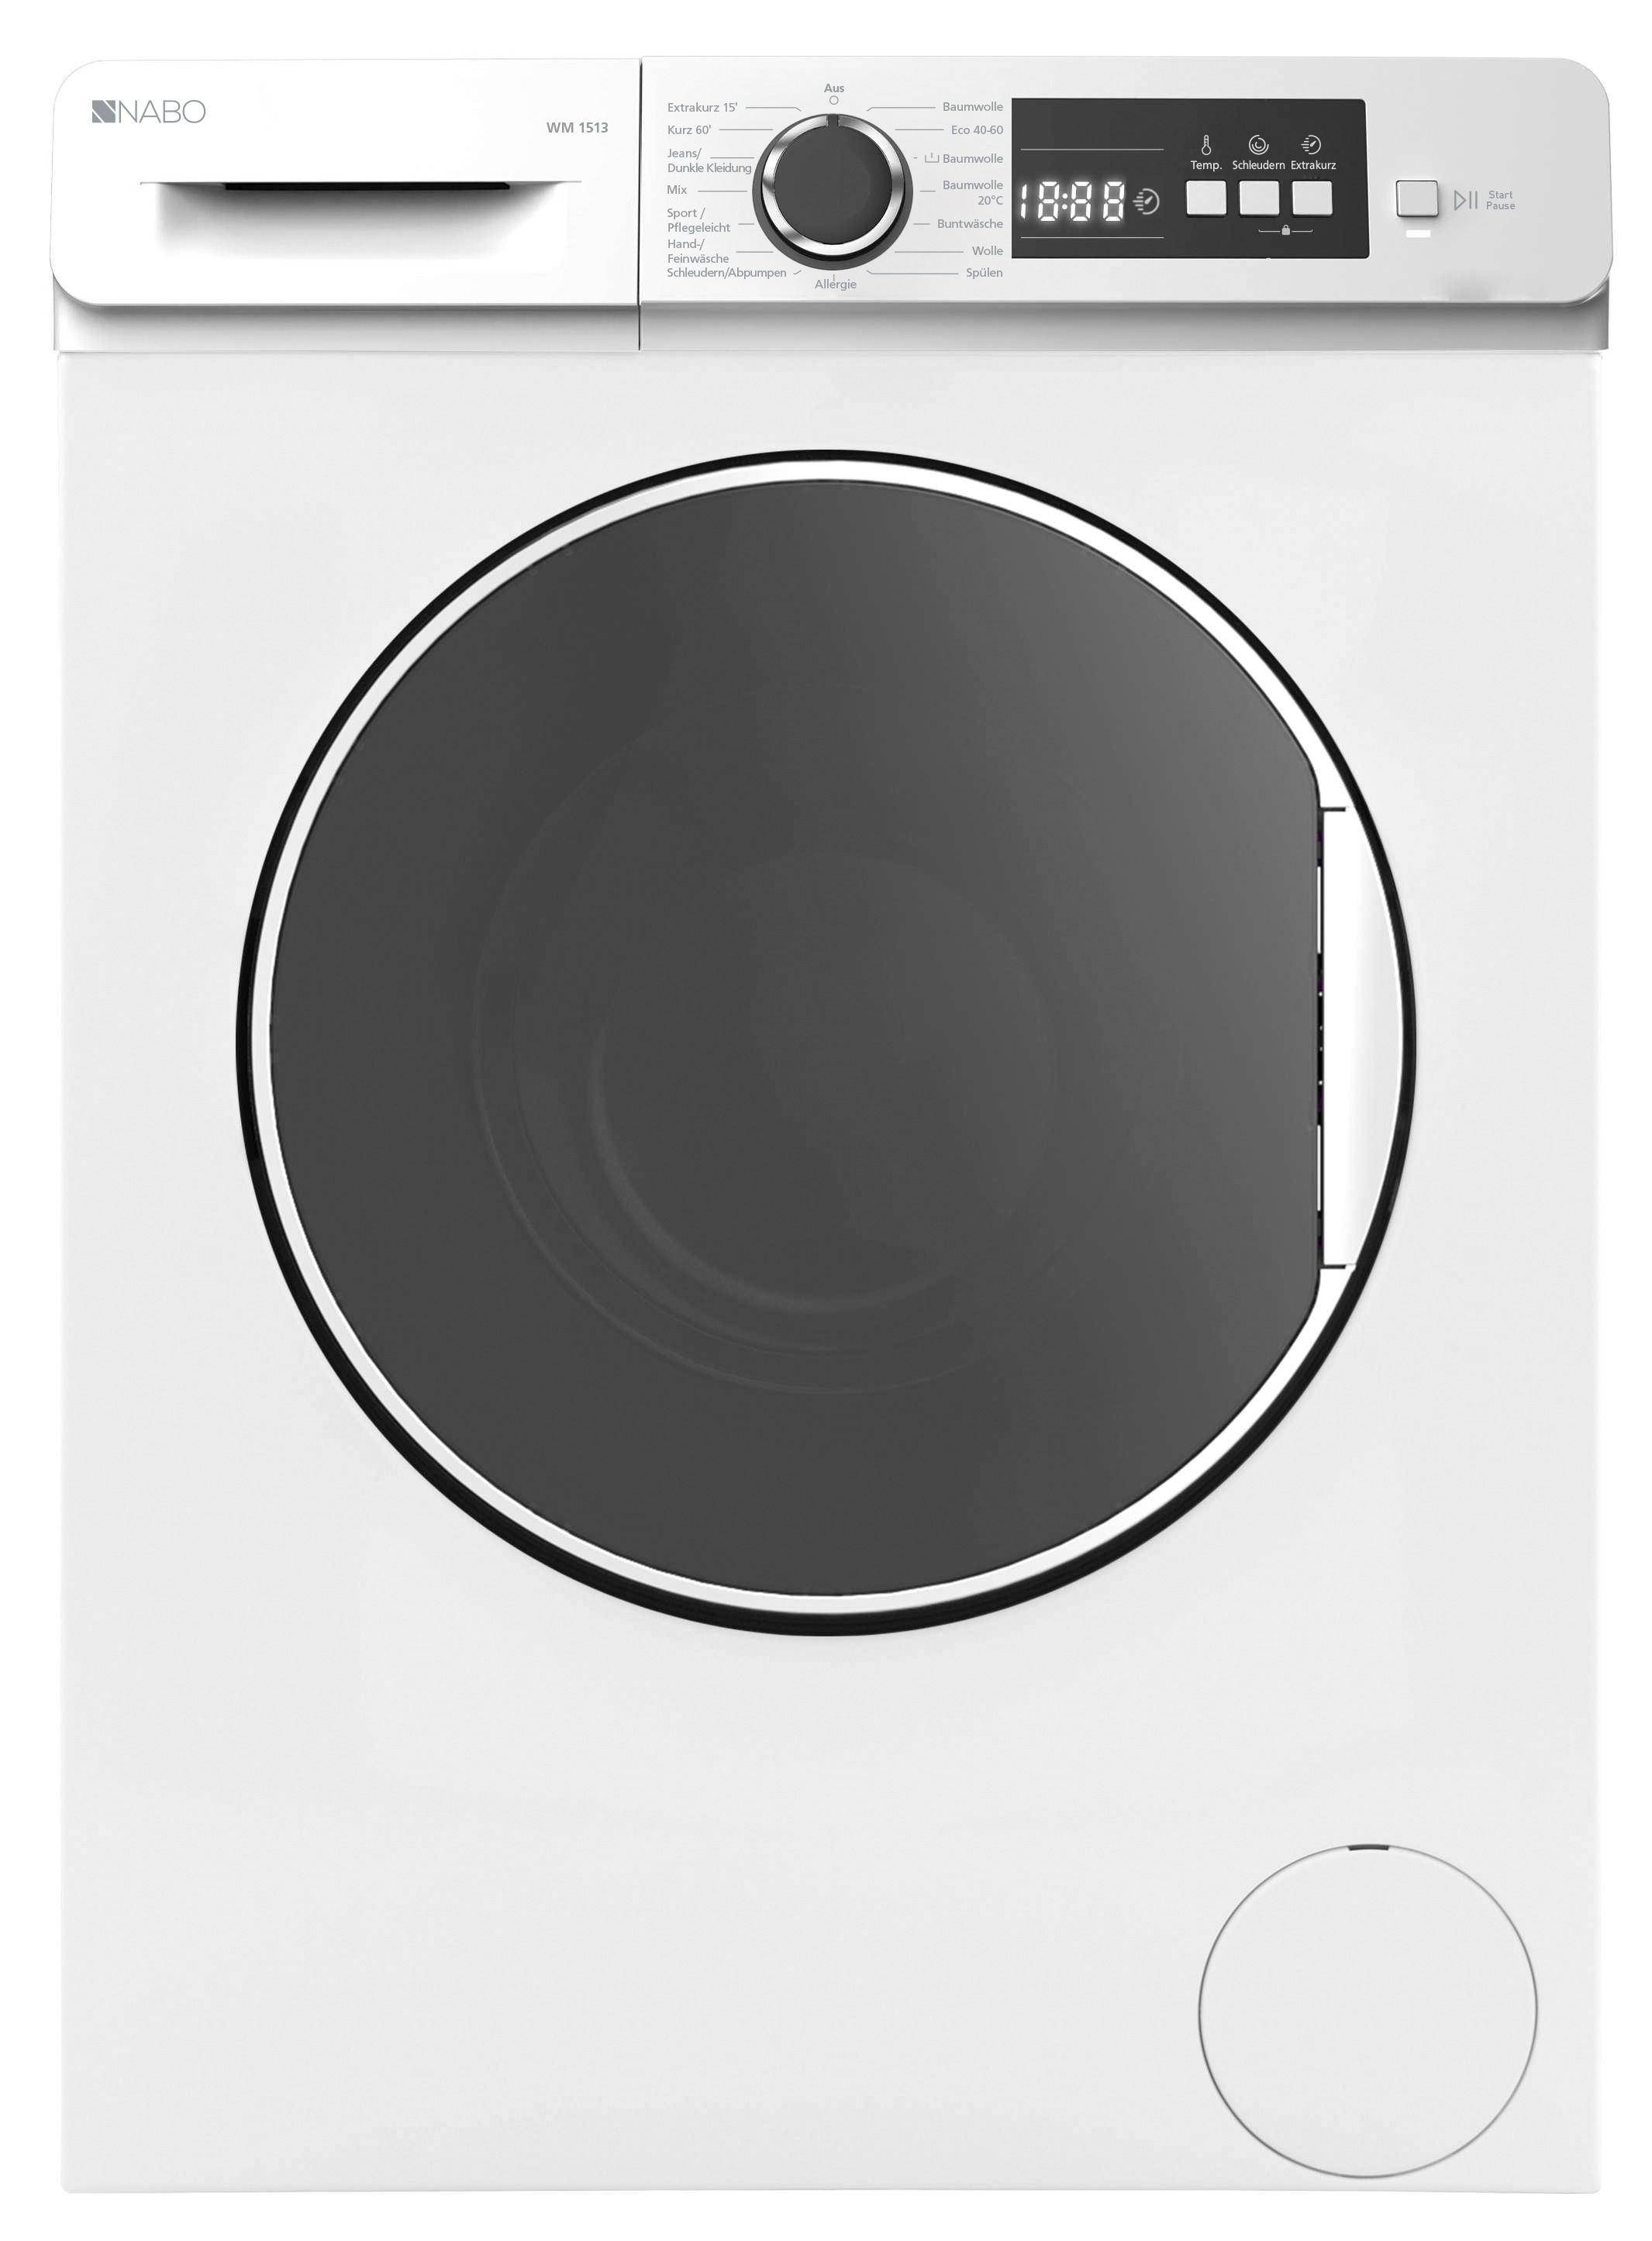 Waschmaschine »NABO Waschvollautomat«, WM 1513, 7 kg, 1400 U/min